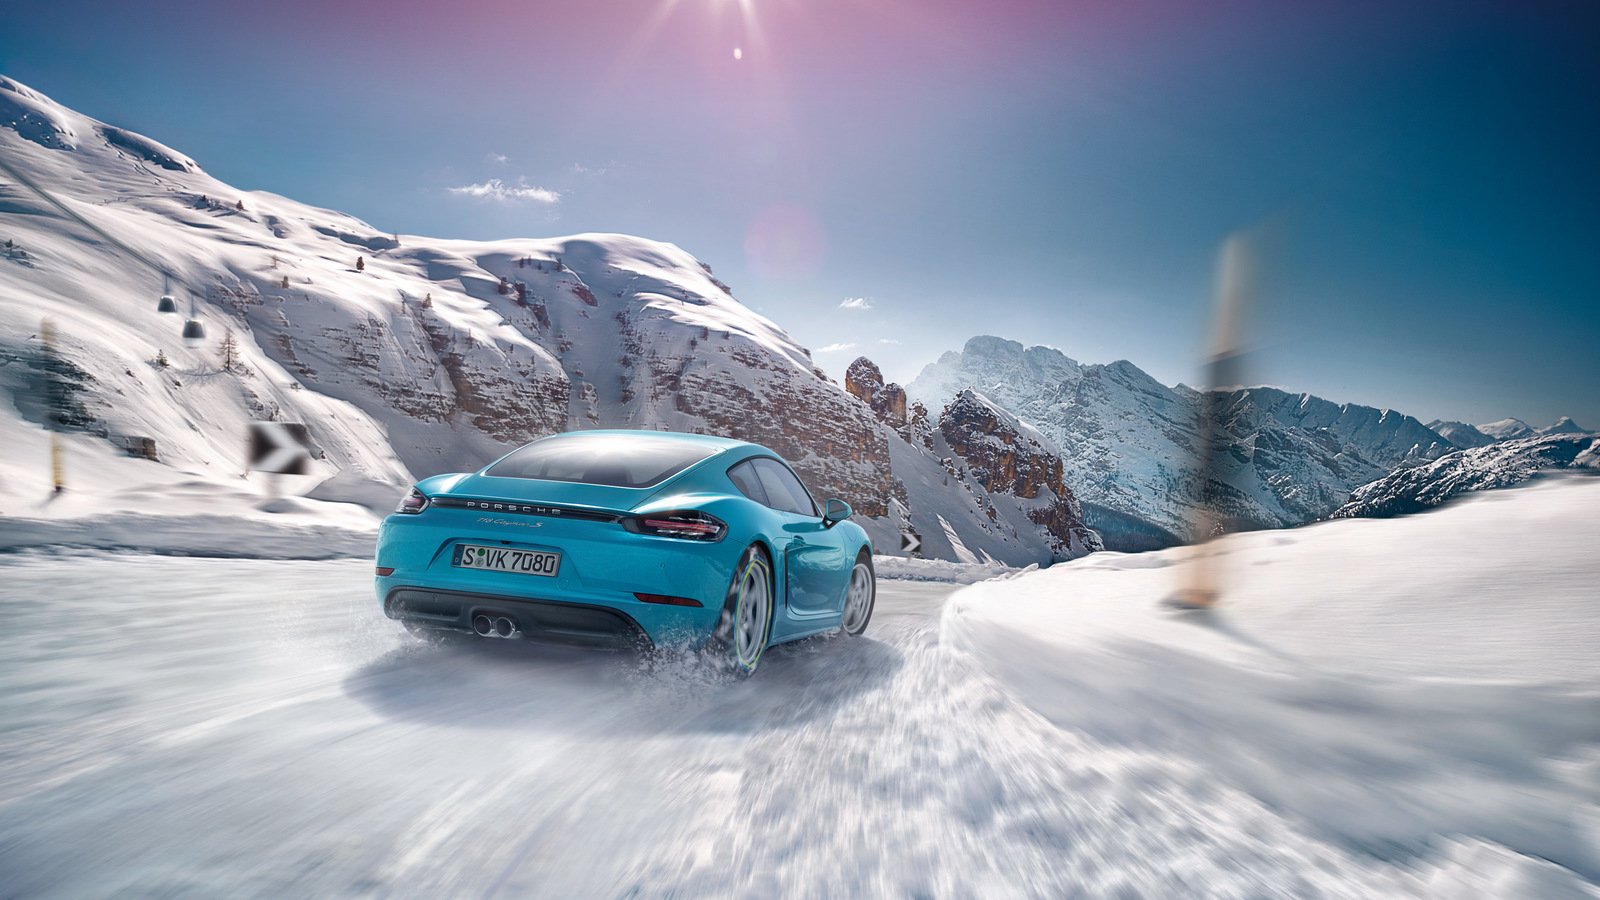 2018 Porsche 718 Cayman On Snow Wide Hd Wallpaper - Porsche 718 Cayman Snow , HD Wallpaper & Backgrounds